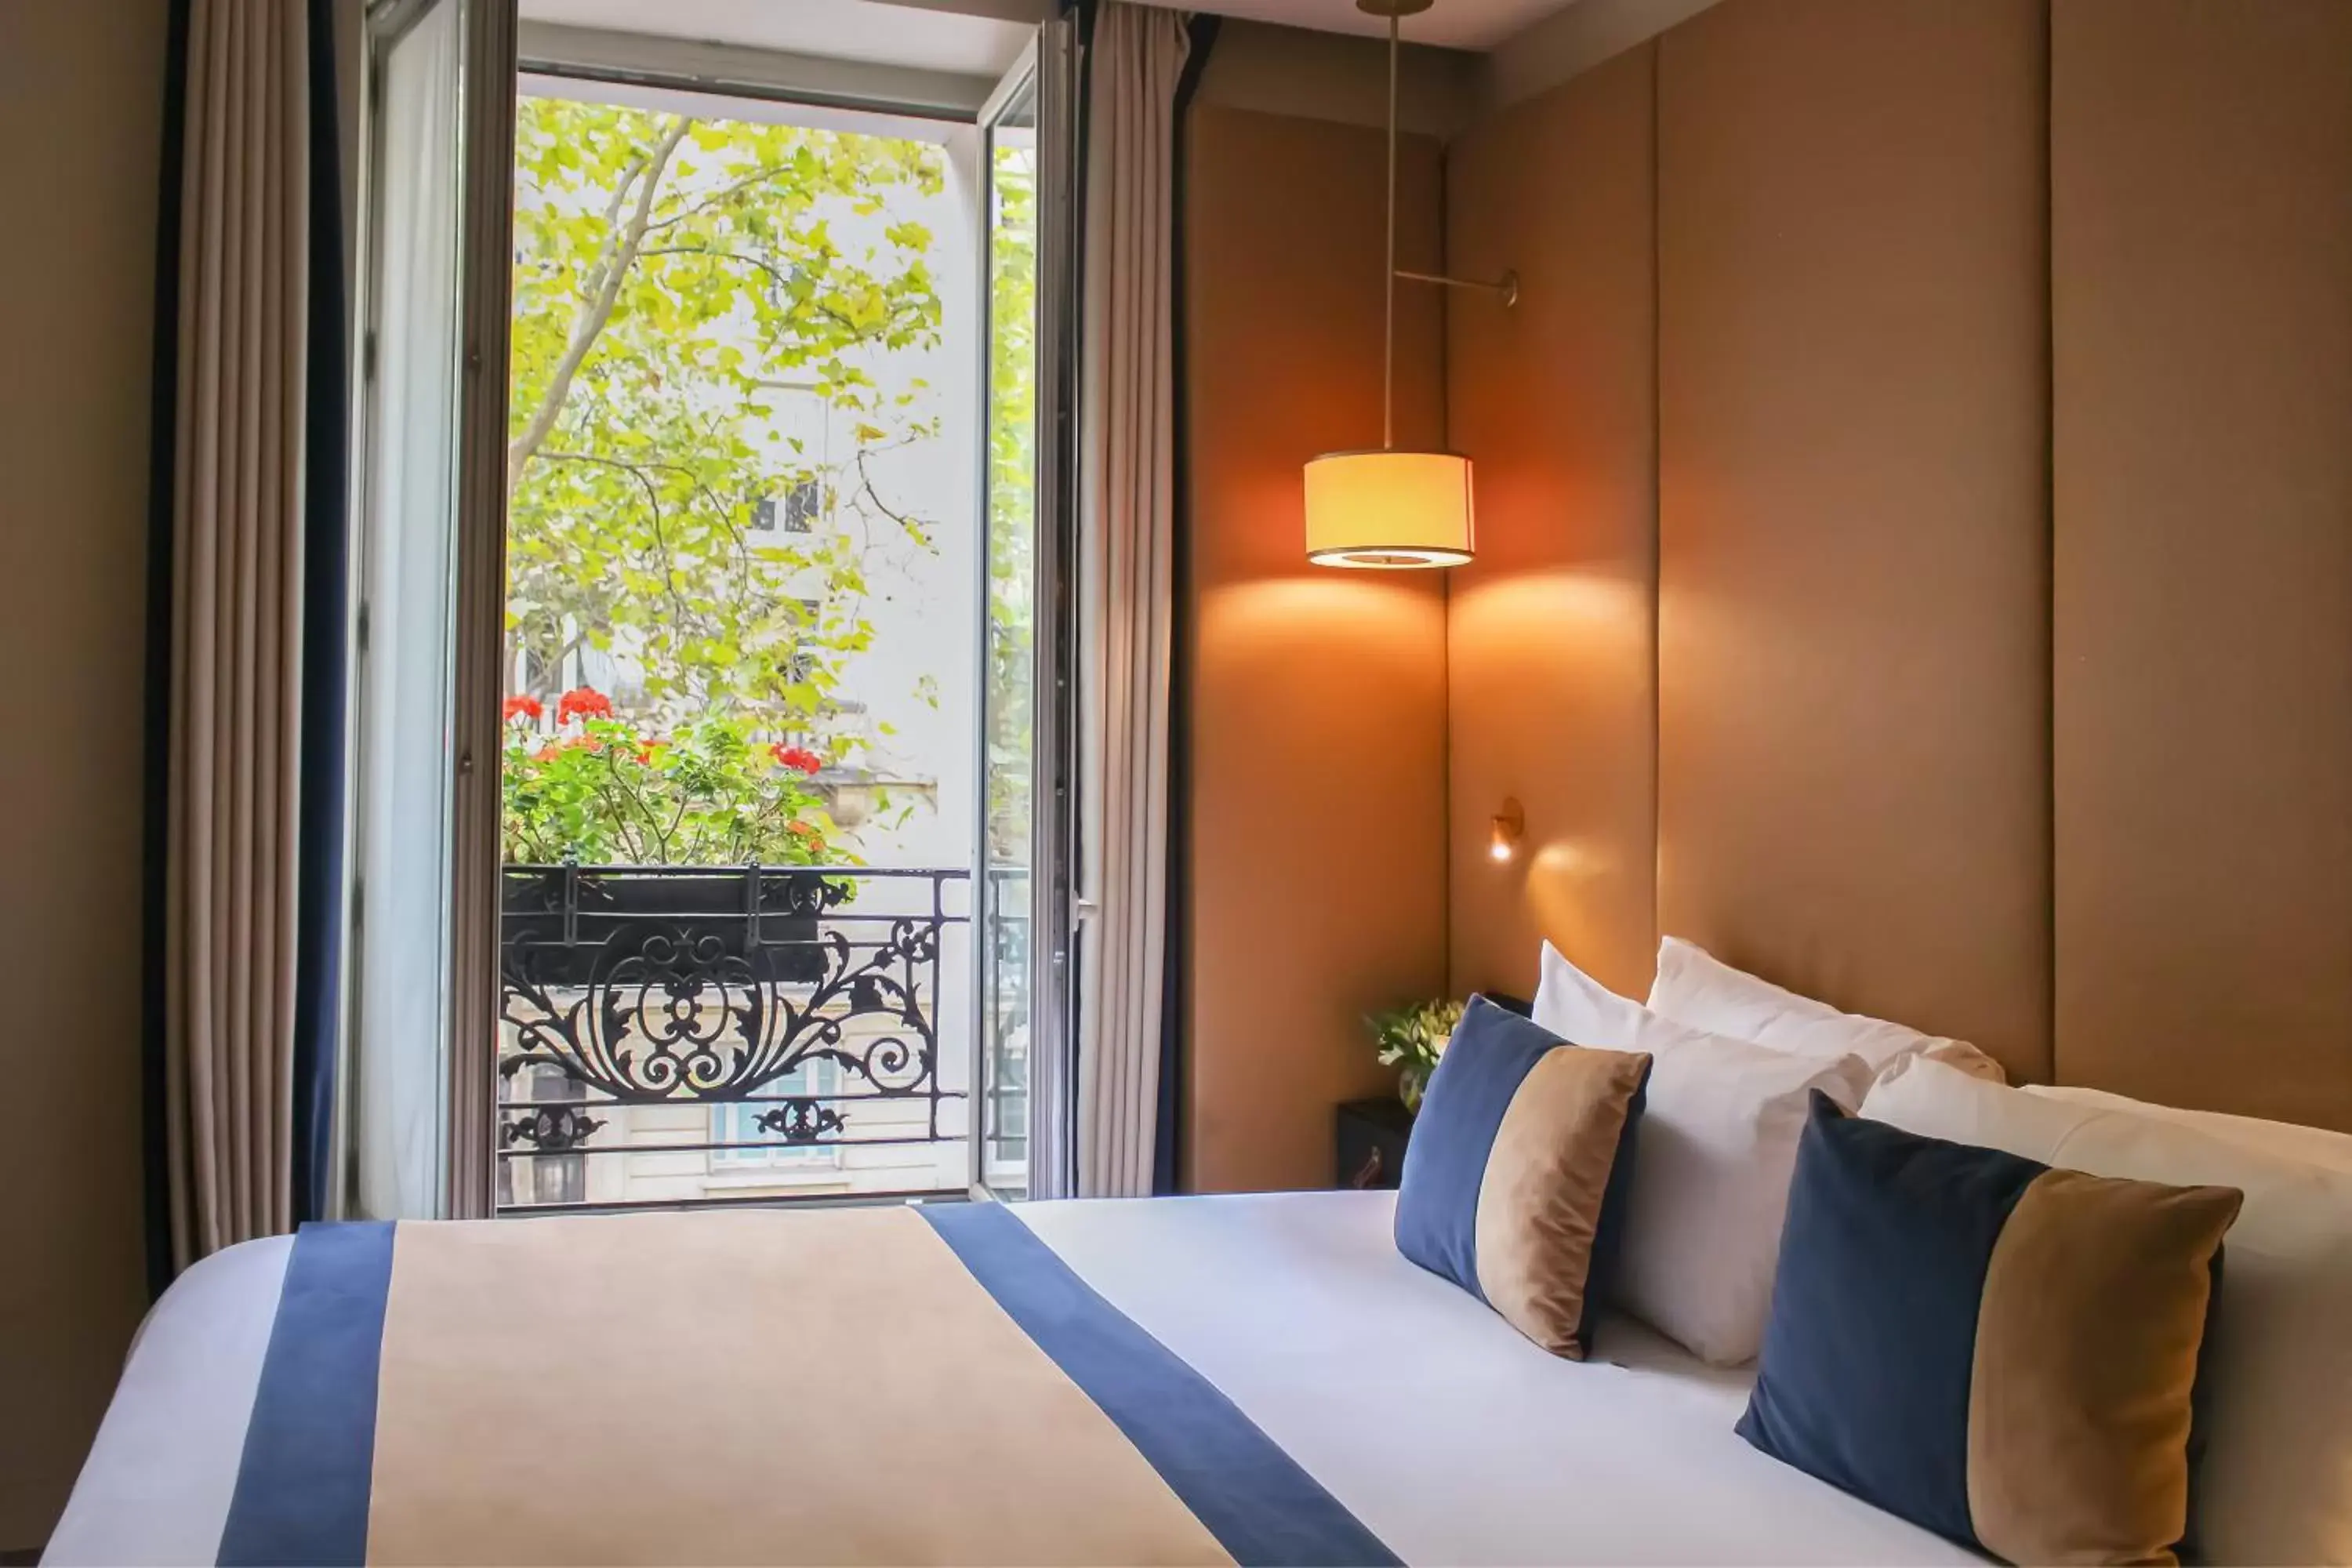 Bed in Hôtel La Bourdonnais by Inwood Hotels